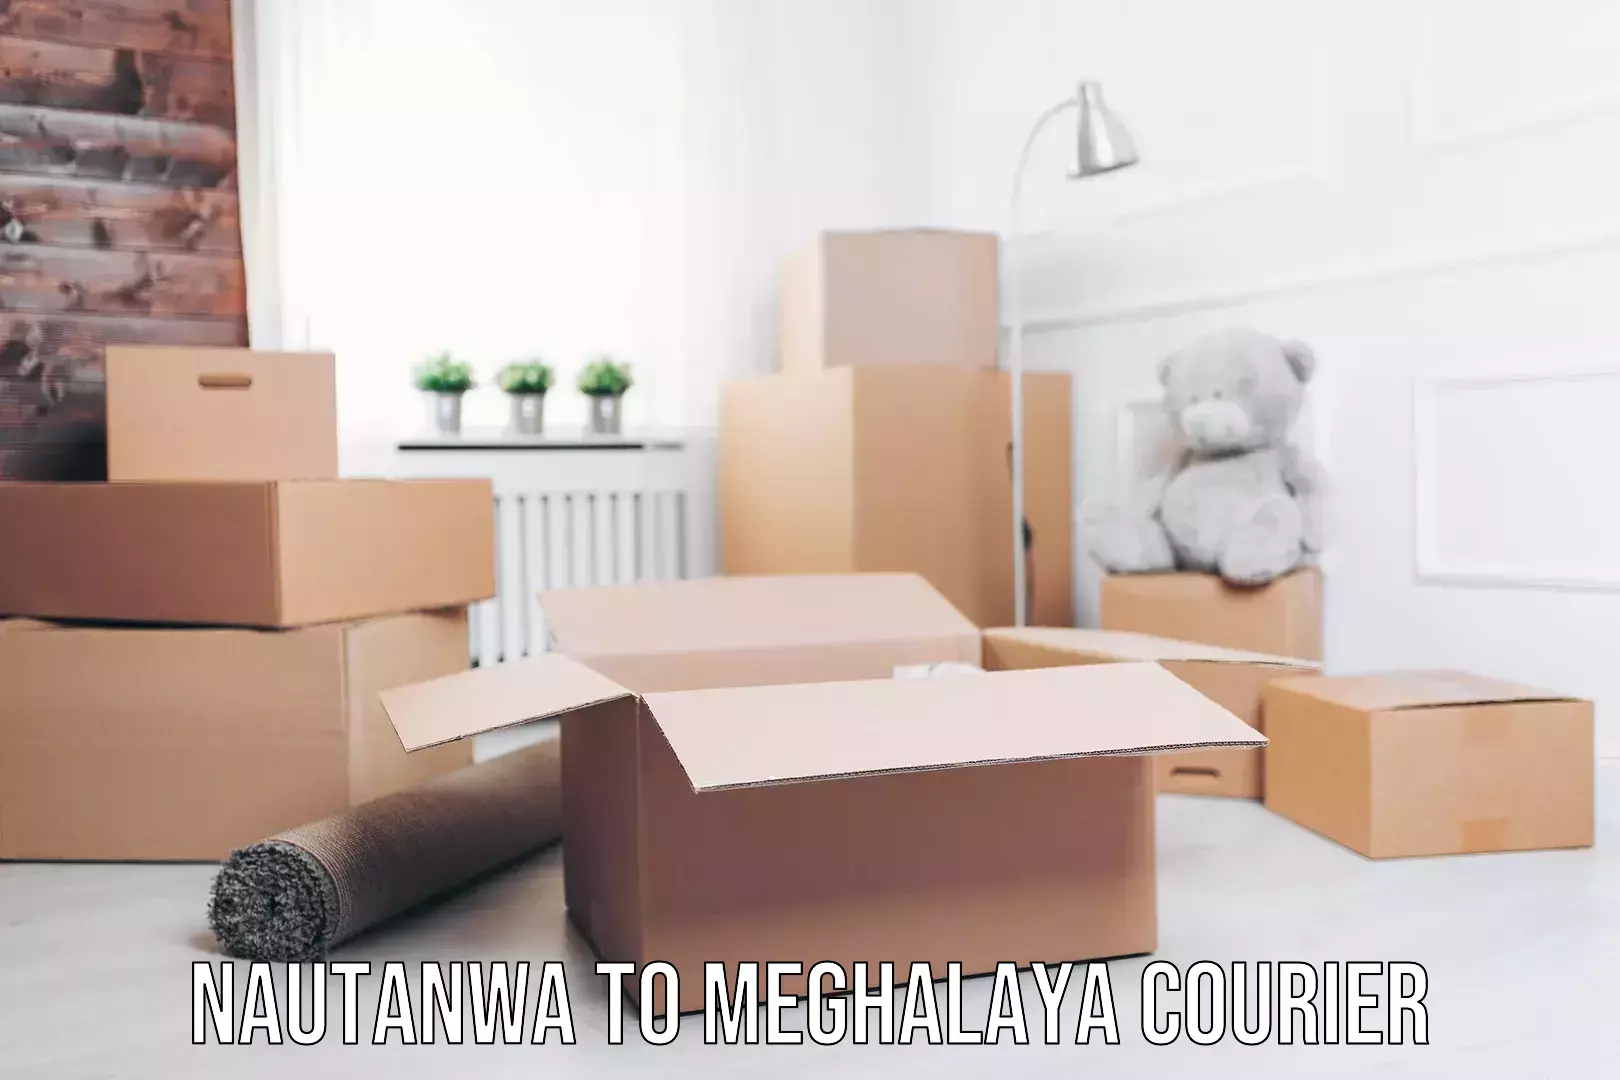 Furniture moving experts Nautanwa to Meghalaya